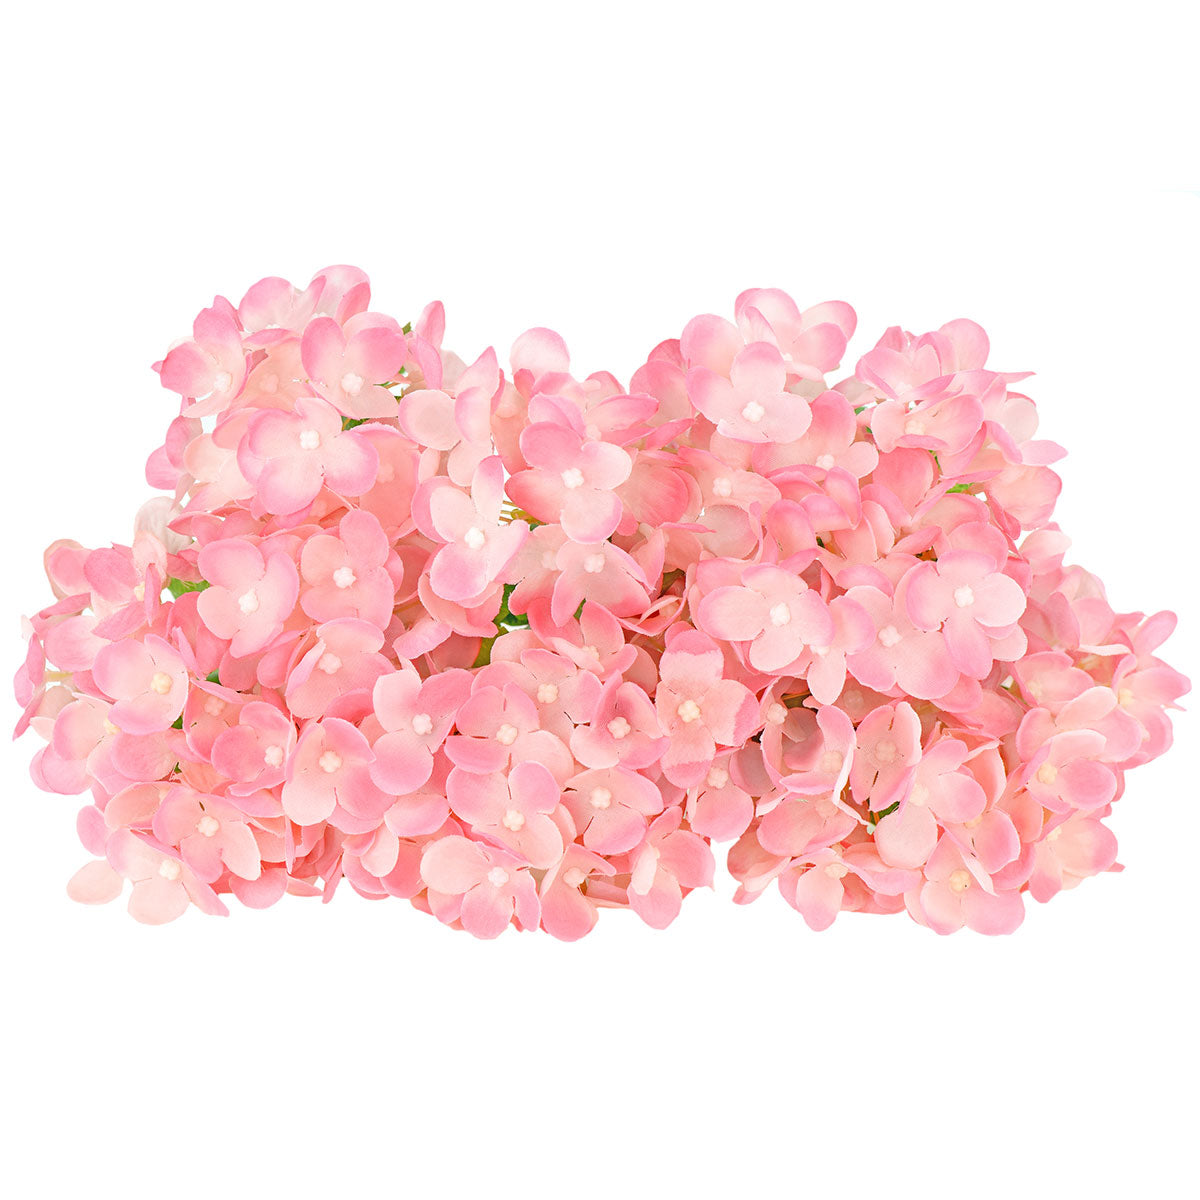 FiveSeasonStuff 15 Stems of 32cm (12.6'') Mini Artificial Hydrangea Flowers(Pink), Bouquet, Floral Arrangement, Perfect for Wedding, Bridal, Party, Home, Shop, Office Décor, DIY Floral Arrangement Decoration